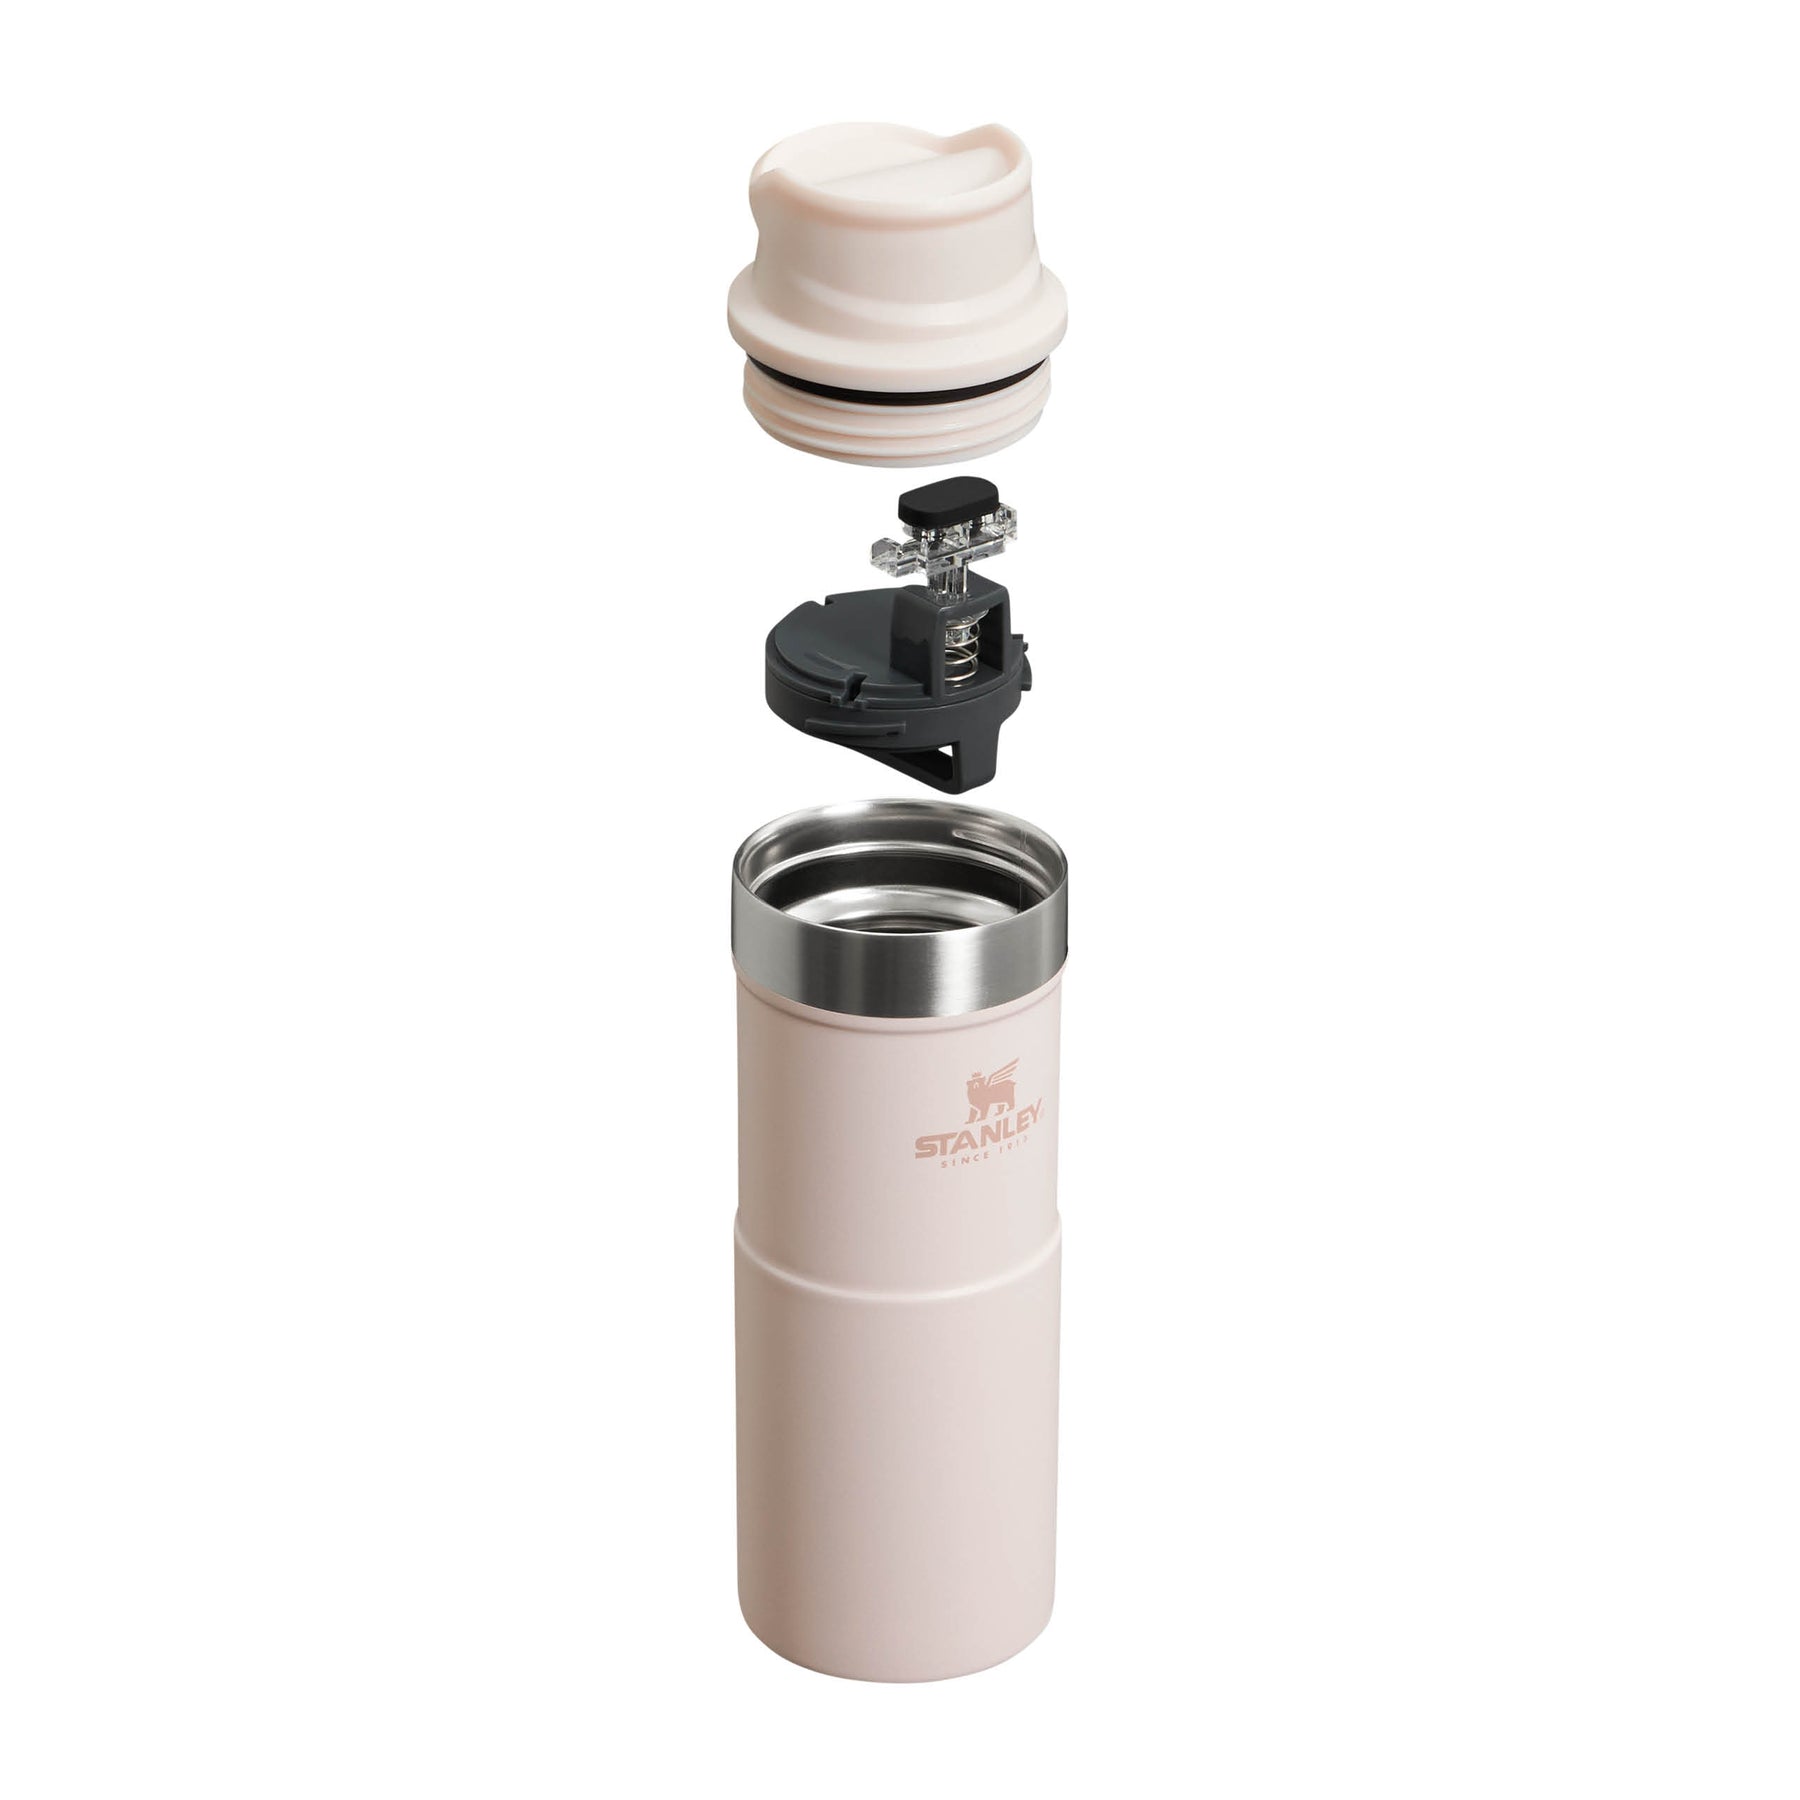 Thermos Travel Mug Polar 0,25L - Stanley - Espresso Gear